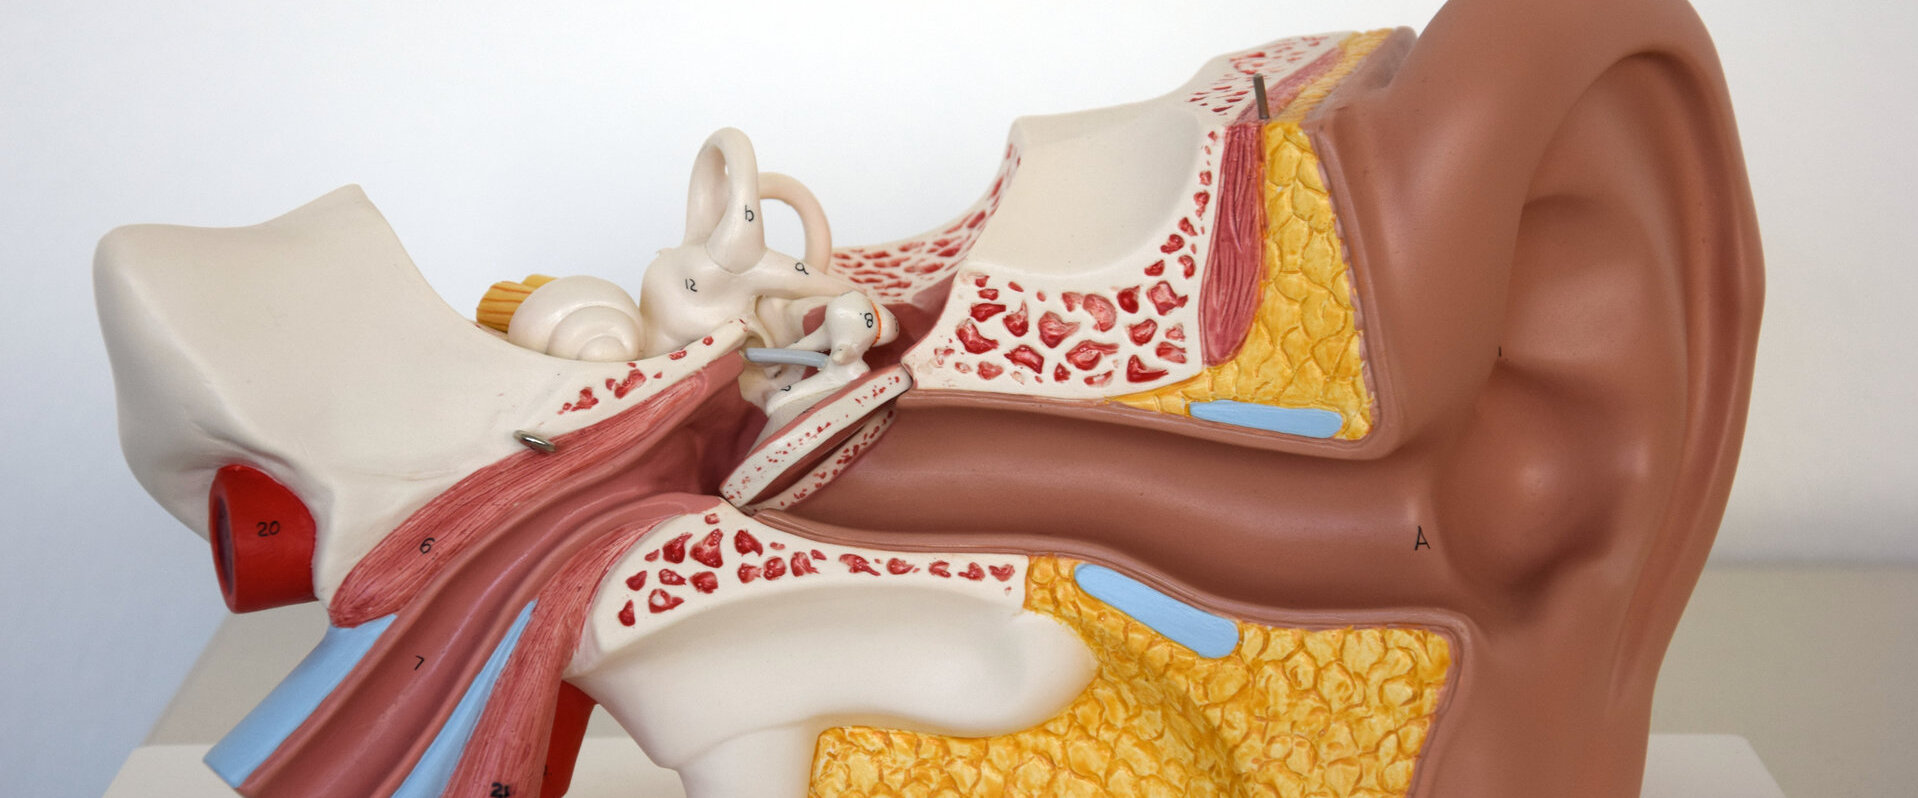 Anatomisches Modell Ohr FG Kommunikationswissenschaft